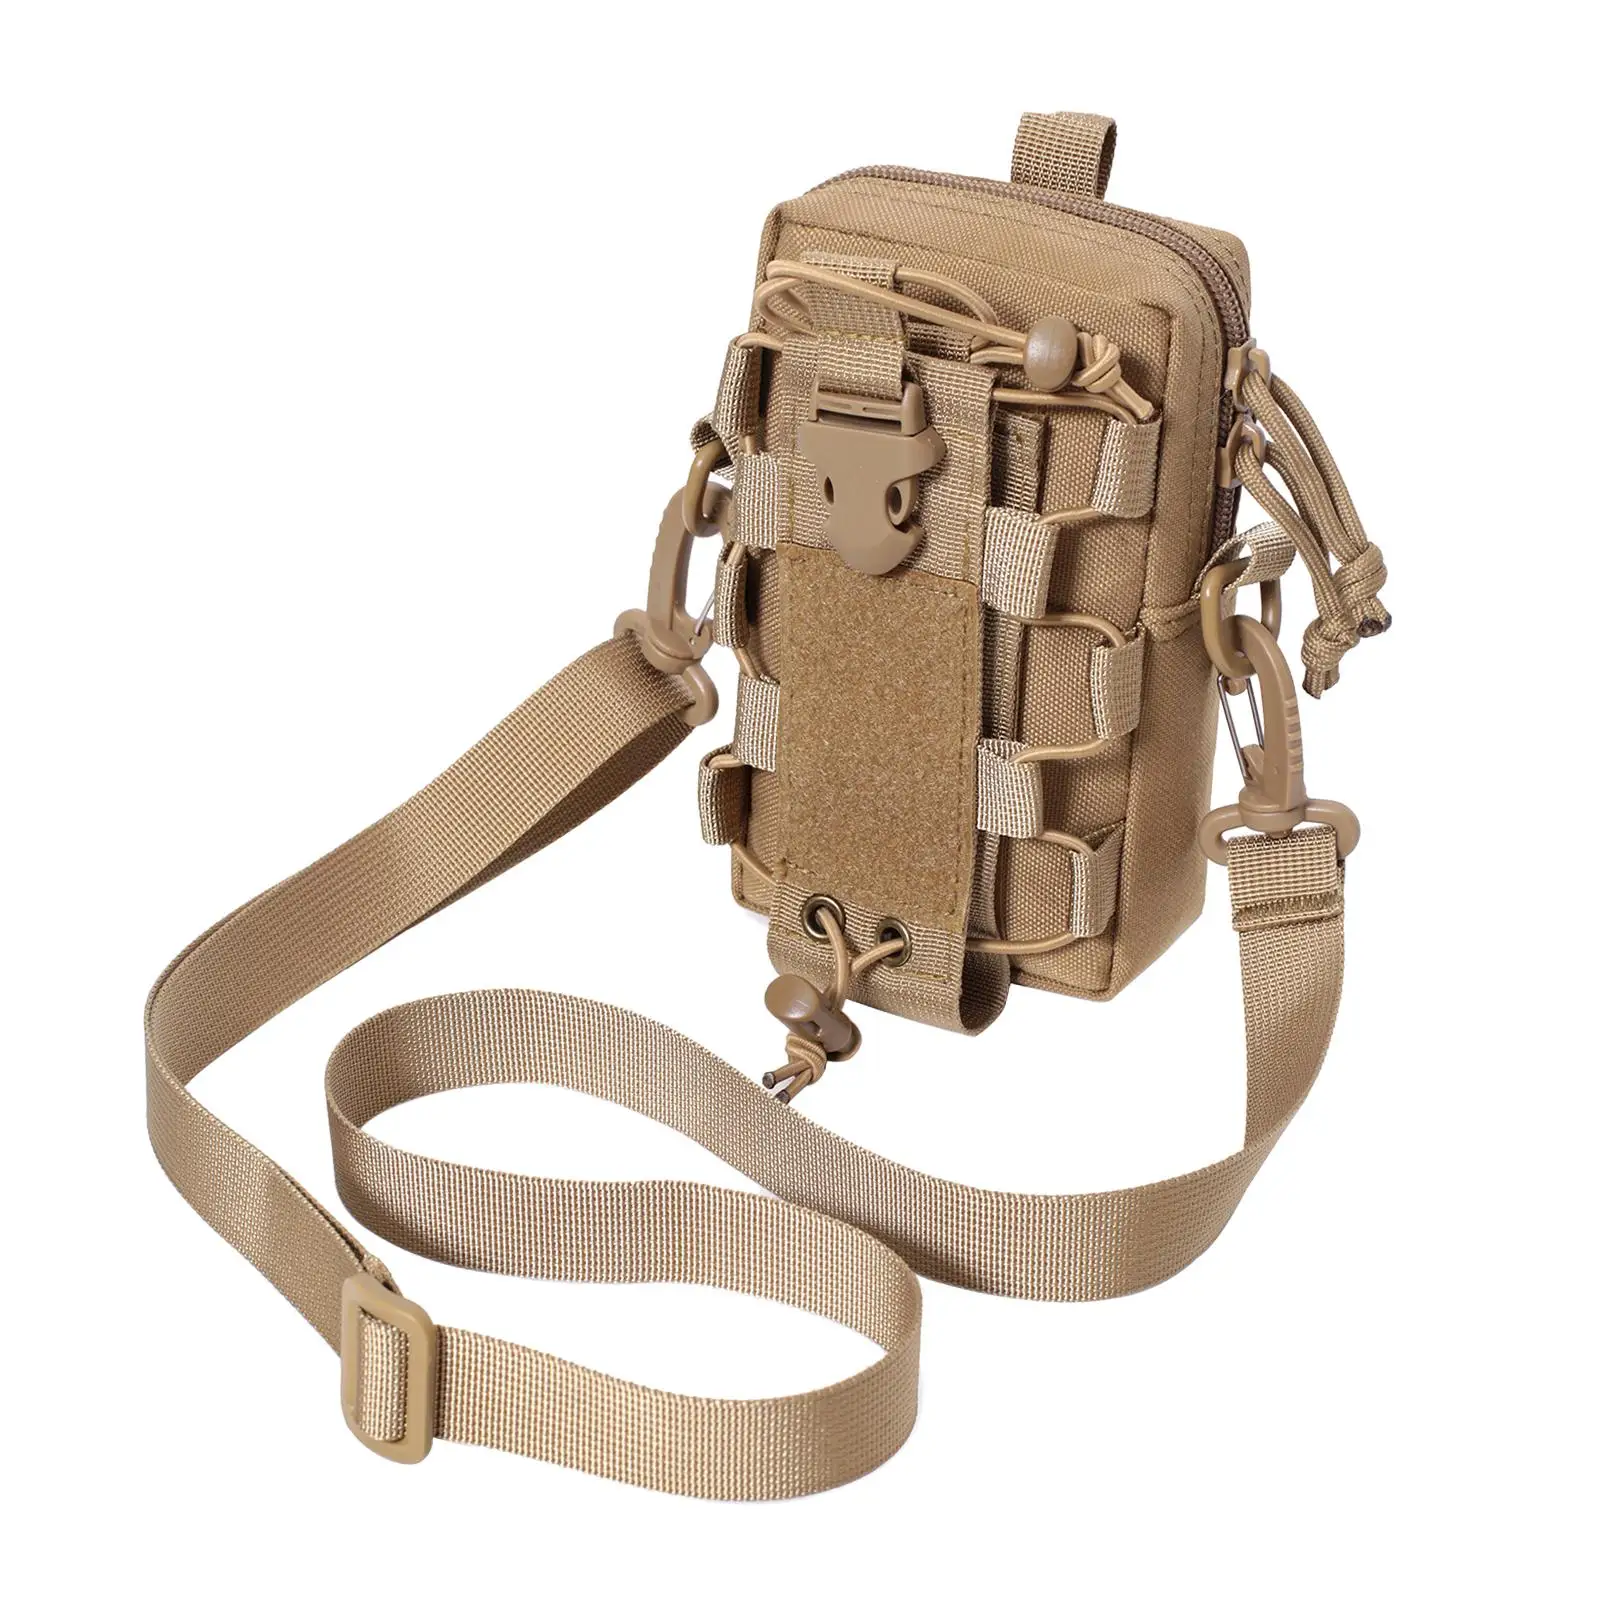 Tacticals-bag with Shoulder Strap  Satchel for Travel Hiking